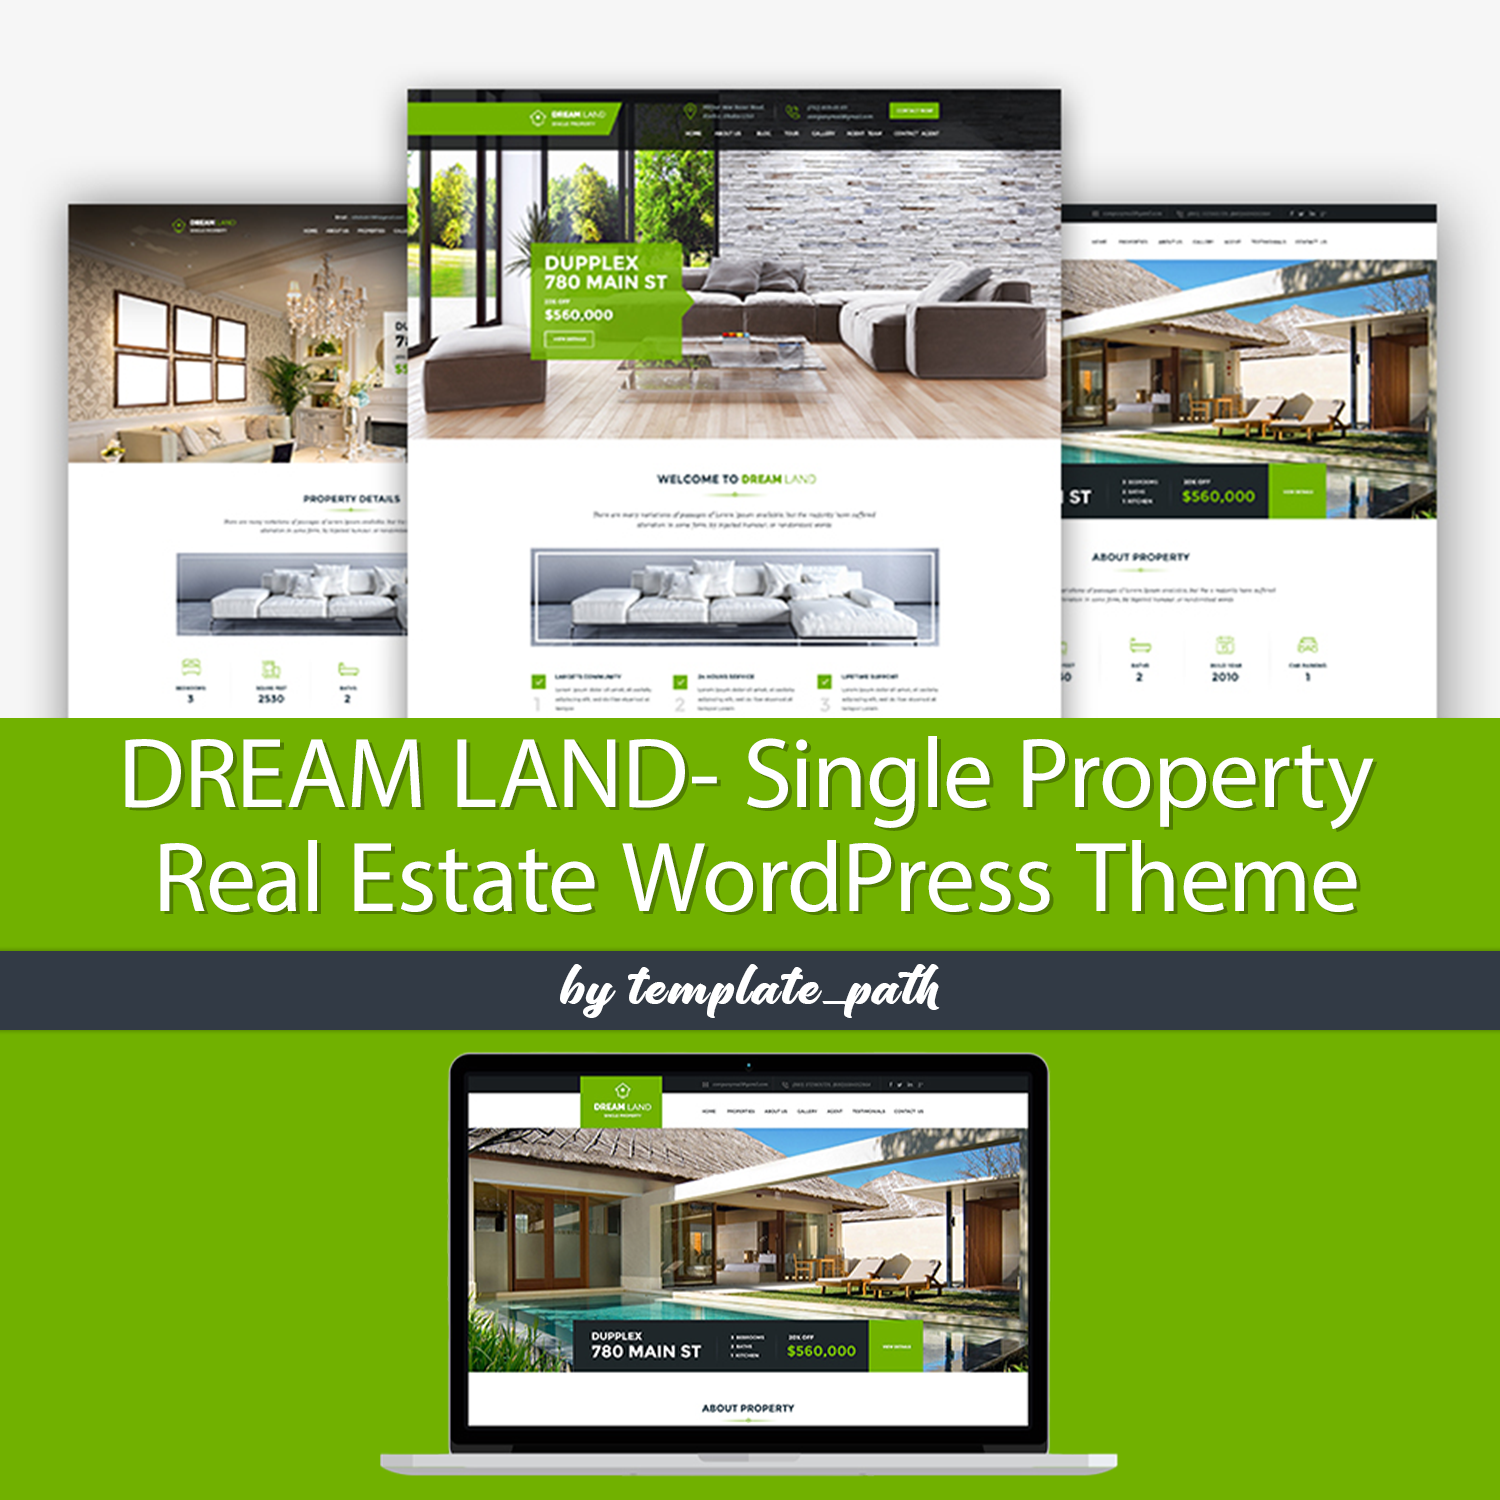 Preview dream land single property real estate wordpress theme.